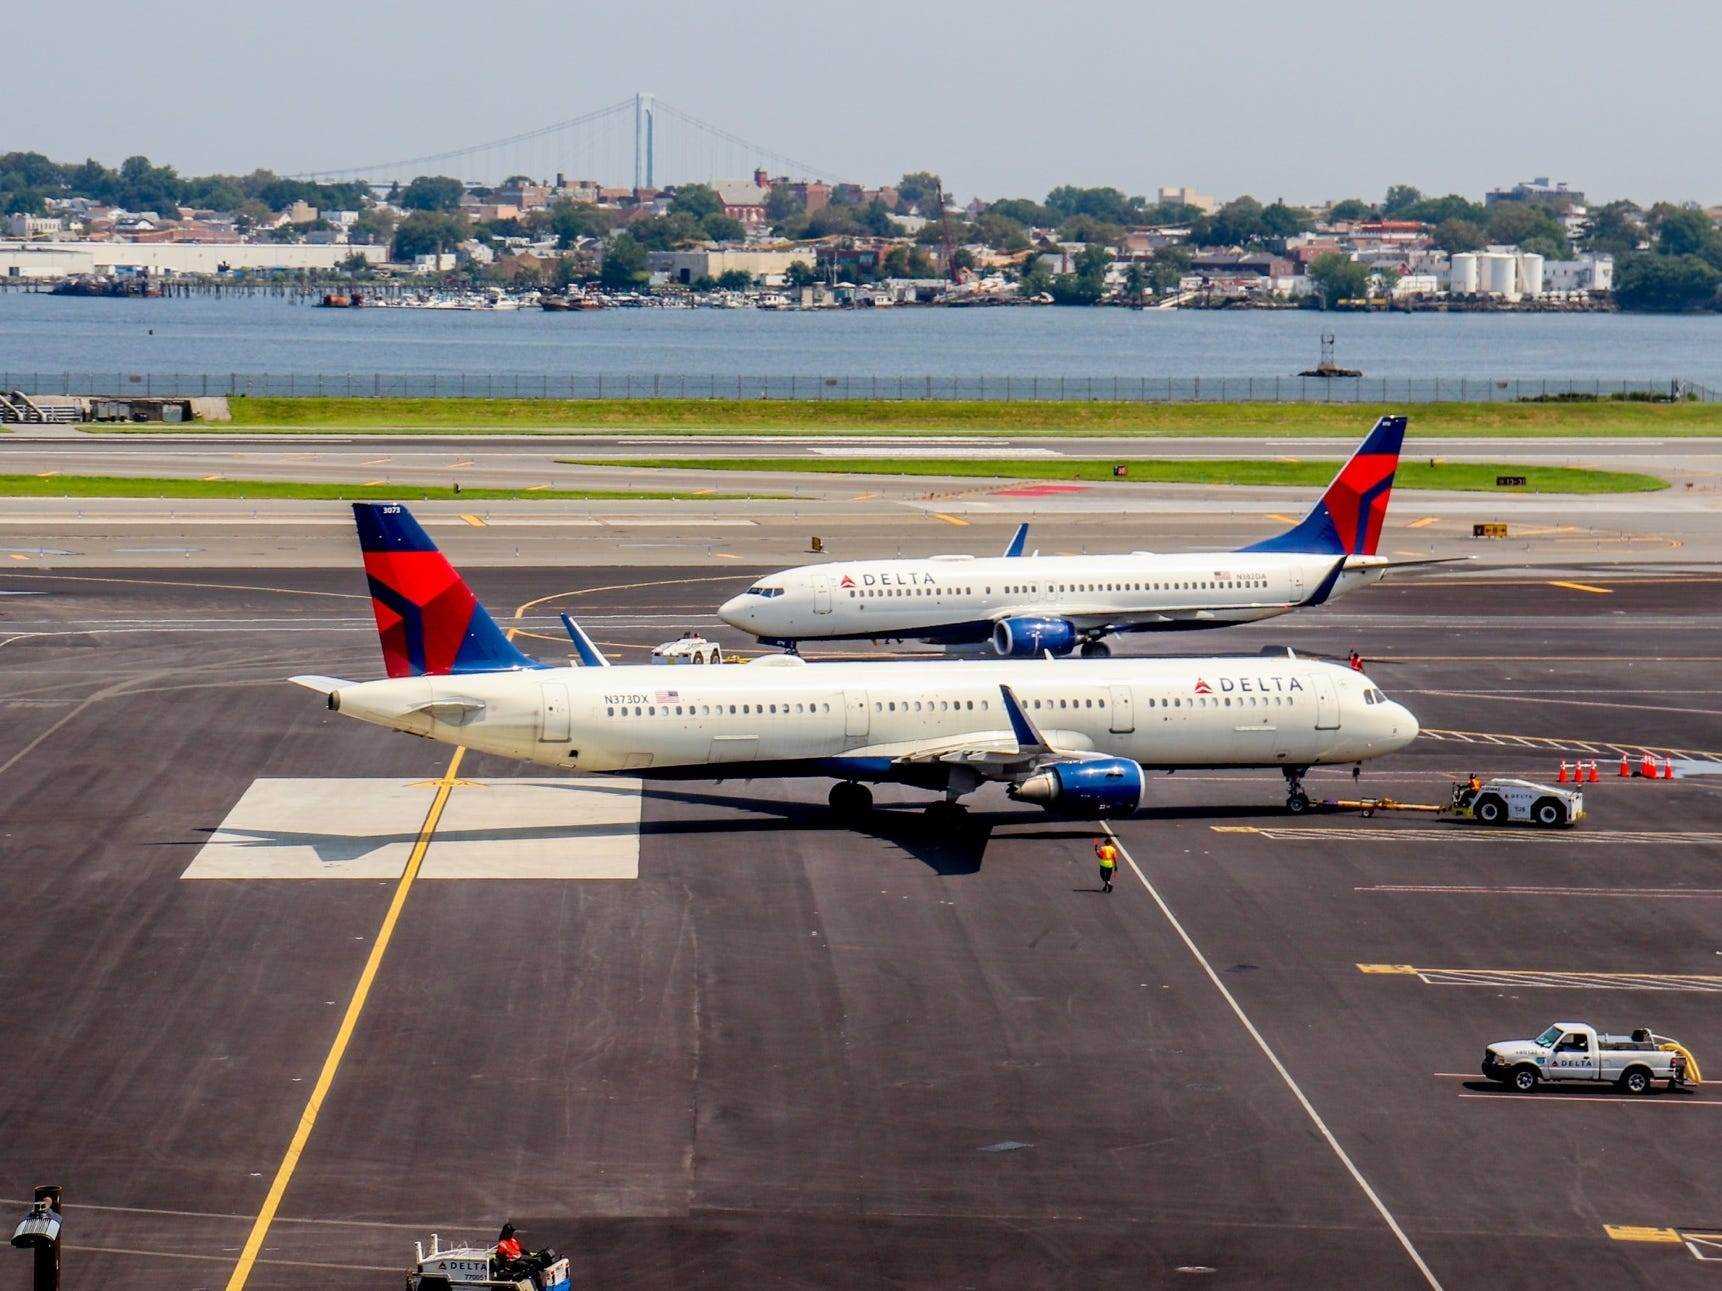 Besichtigung des neuen Terminals von Delta Air Lines am Flughafen LaGuardia — Delta Hard Hat Tour 2021